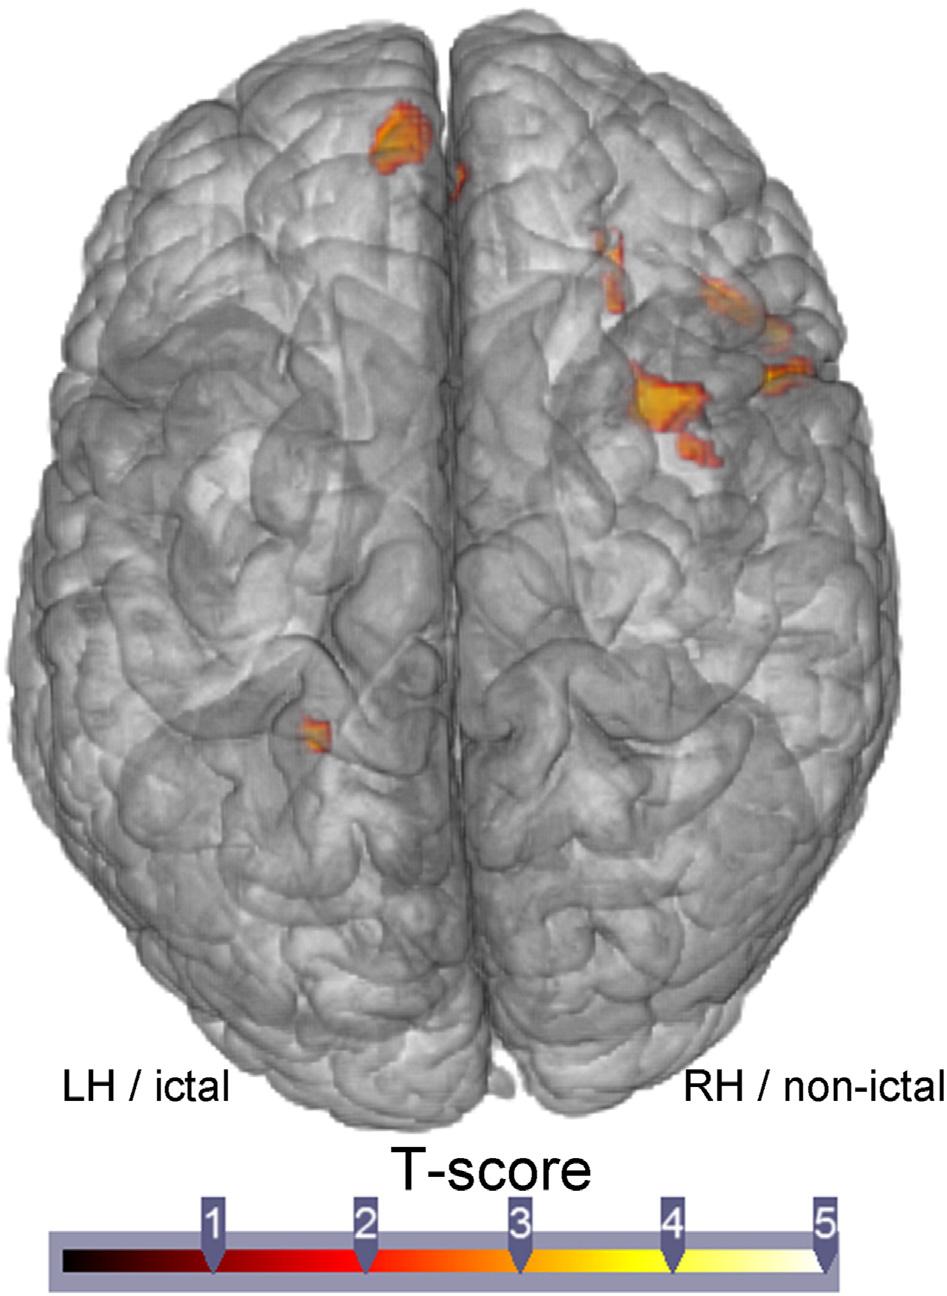 G.E. Doucet et al. / NeuroImage: Clinical 9 (2015) 458 